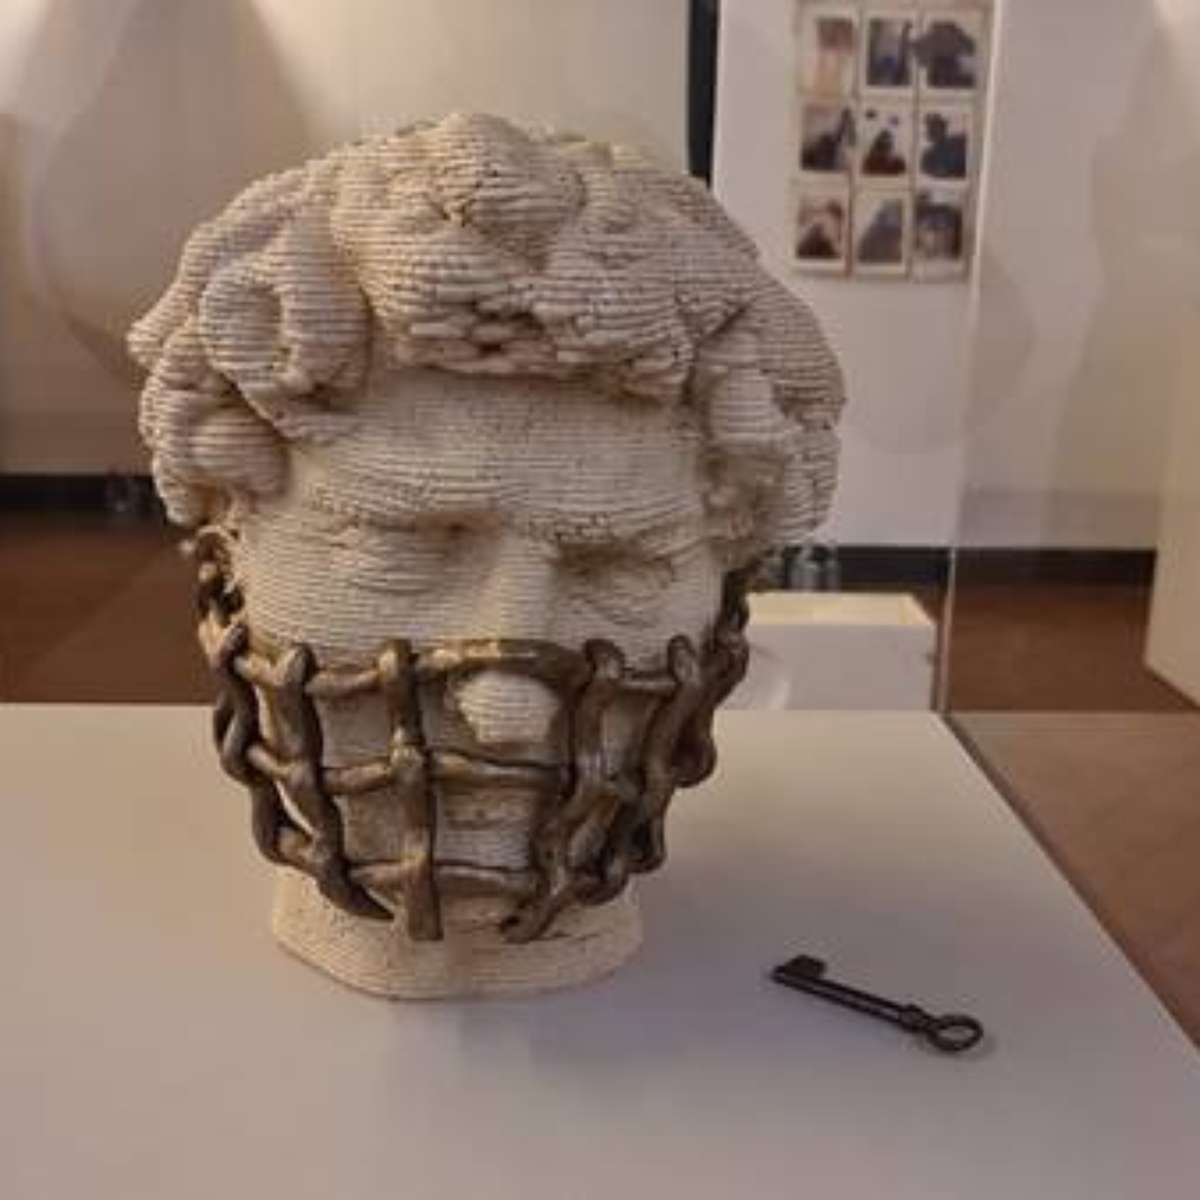 Mostra 'Respiro da Arte' expõe máscaras estilizadas na Itália